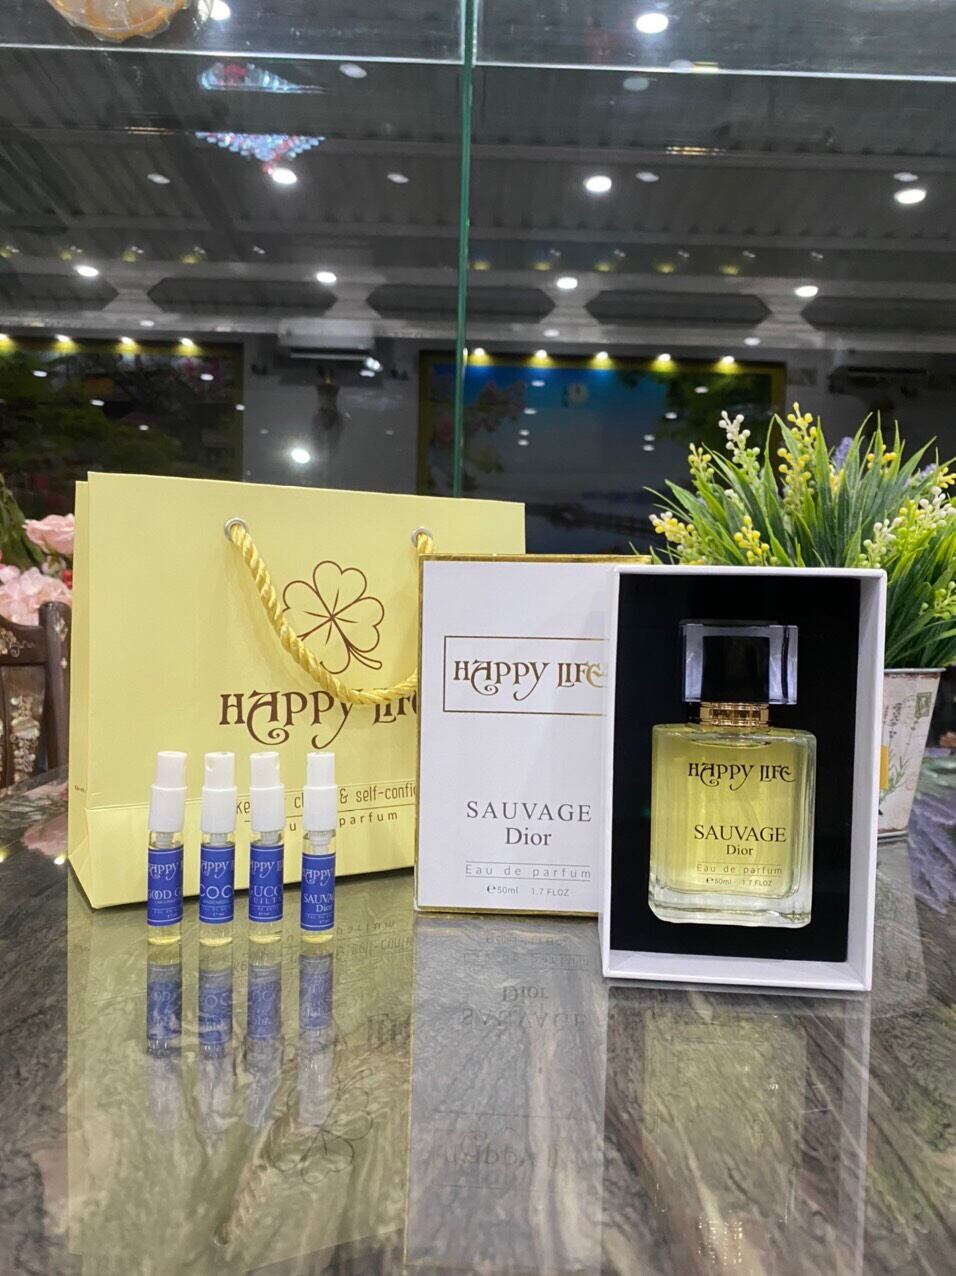 Nước Hoa Christian Dior Sauvage Eau de Parfum chính hãng rẻ nhất HCM